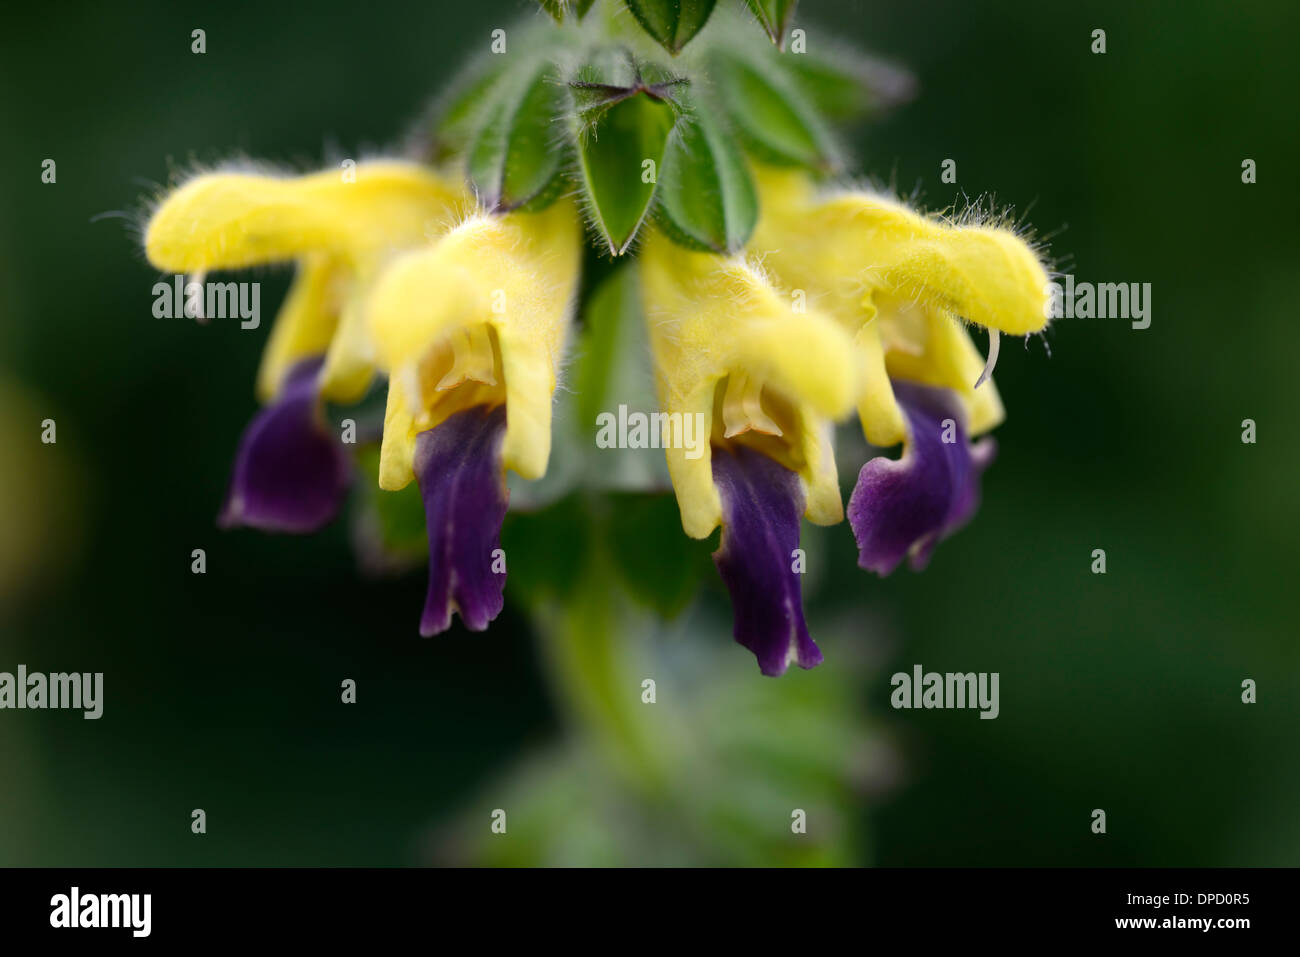 Les lèvres bleues bulleyana salvia sage sages jaune violet fleurs plante à fleurs portraits bicolor bicolor fleurs Banque D'Images